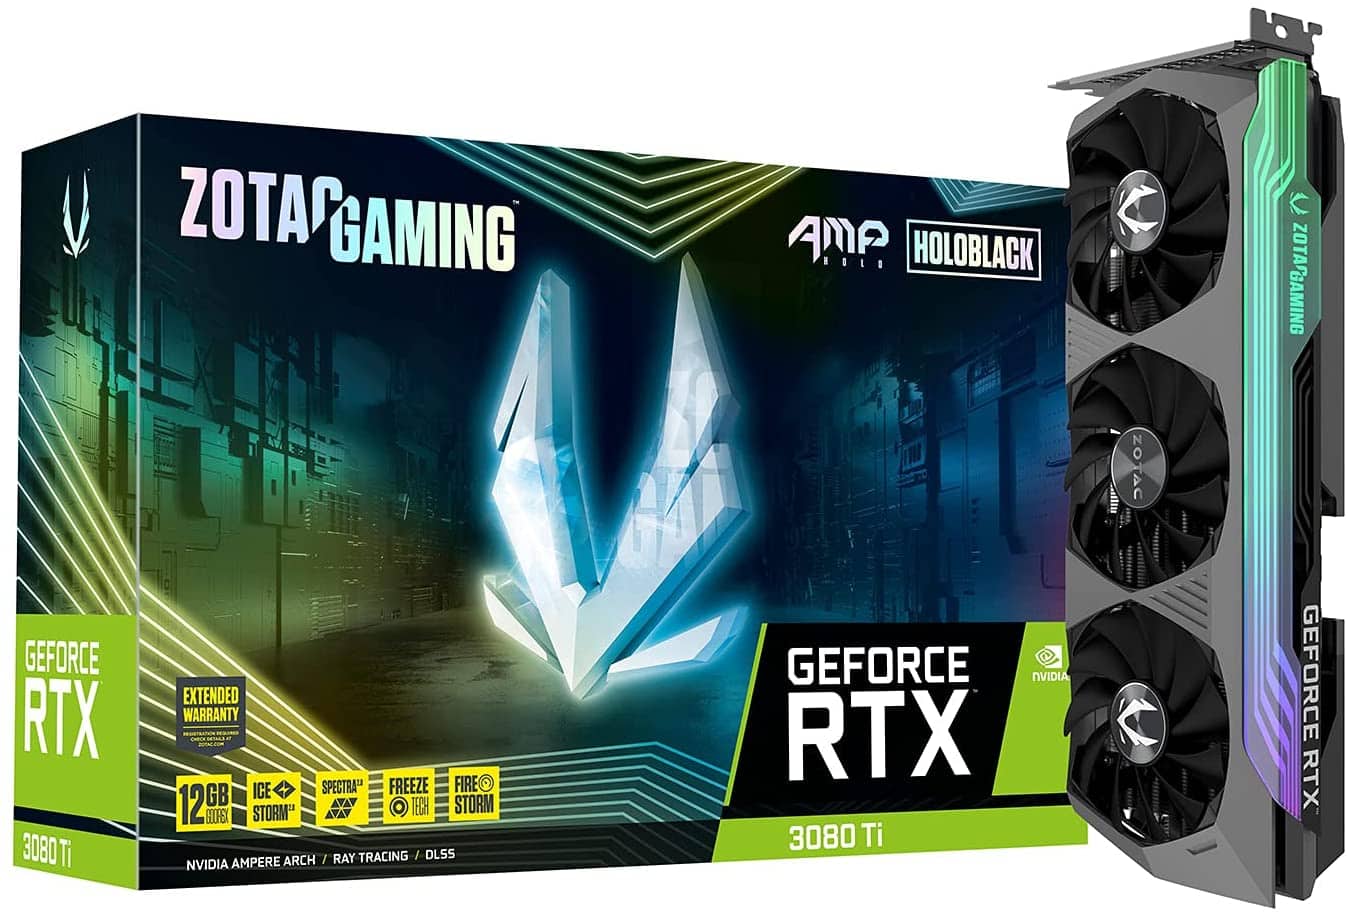 ZOTAC Gaming GeForce RTX 3080 Ti AMP Holoblack